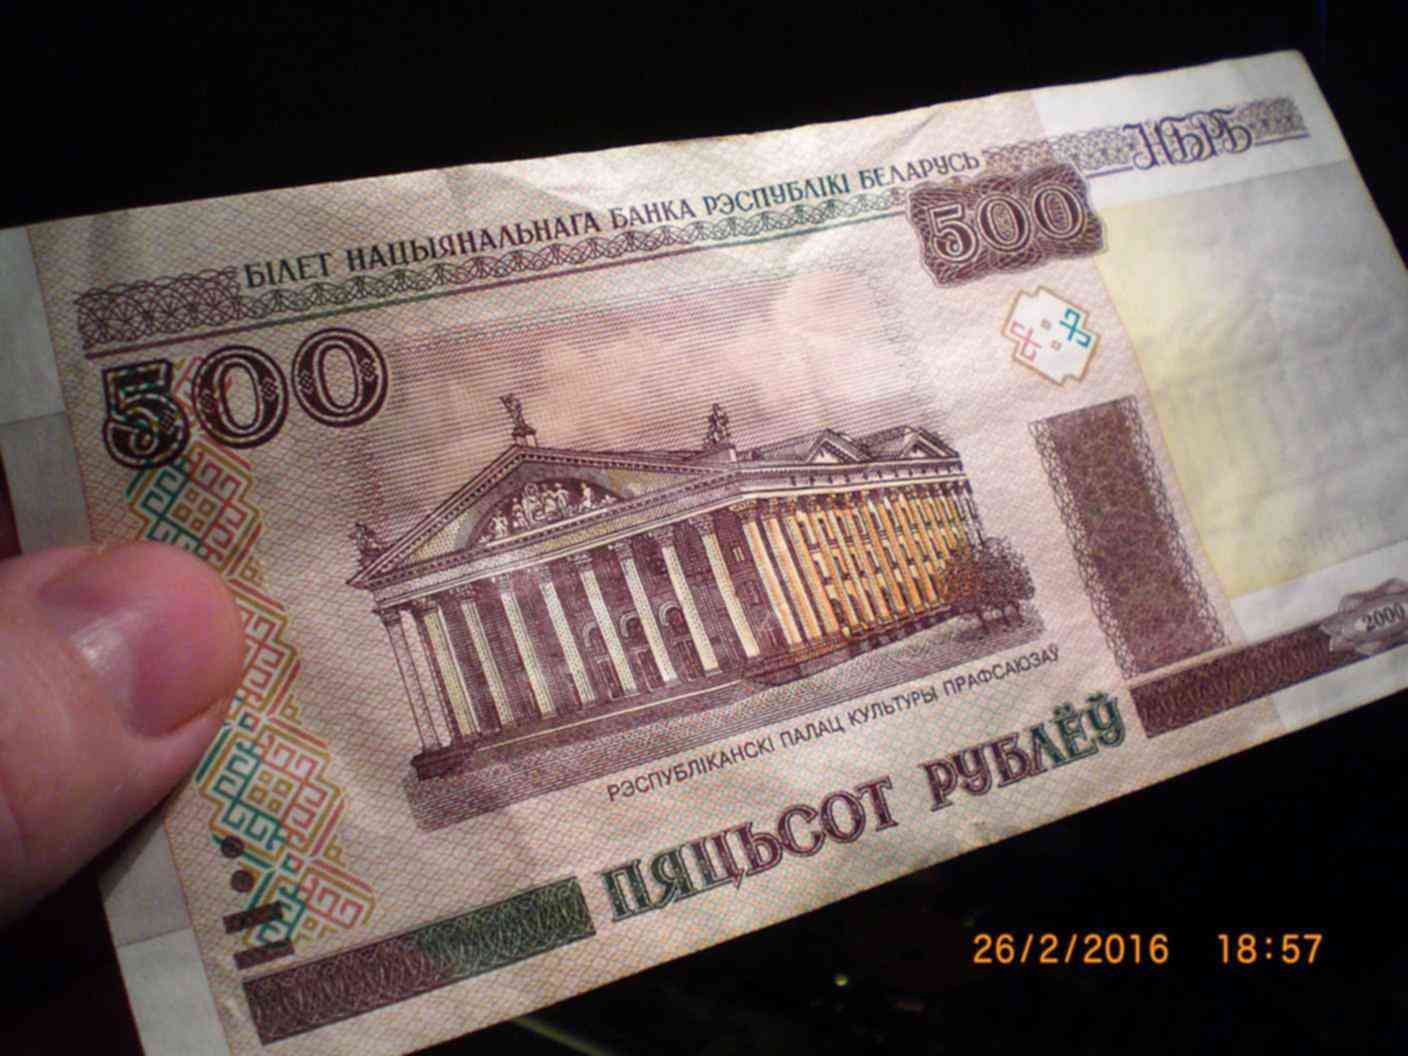 Пятихатка это 500. 500 Белорусских рублей 2000 года. Белорусские рубли прикол. Пятихатка купюра. Пятихатки деньги.